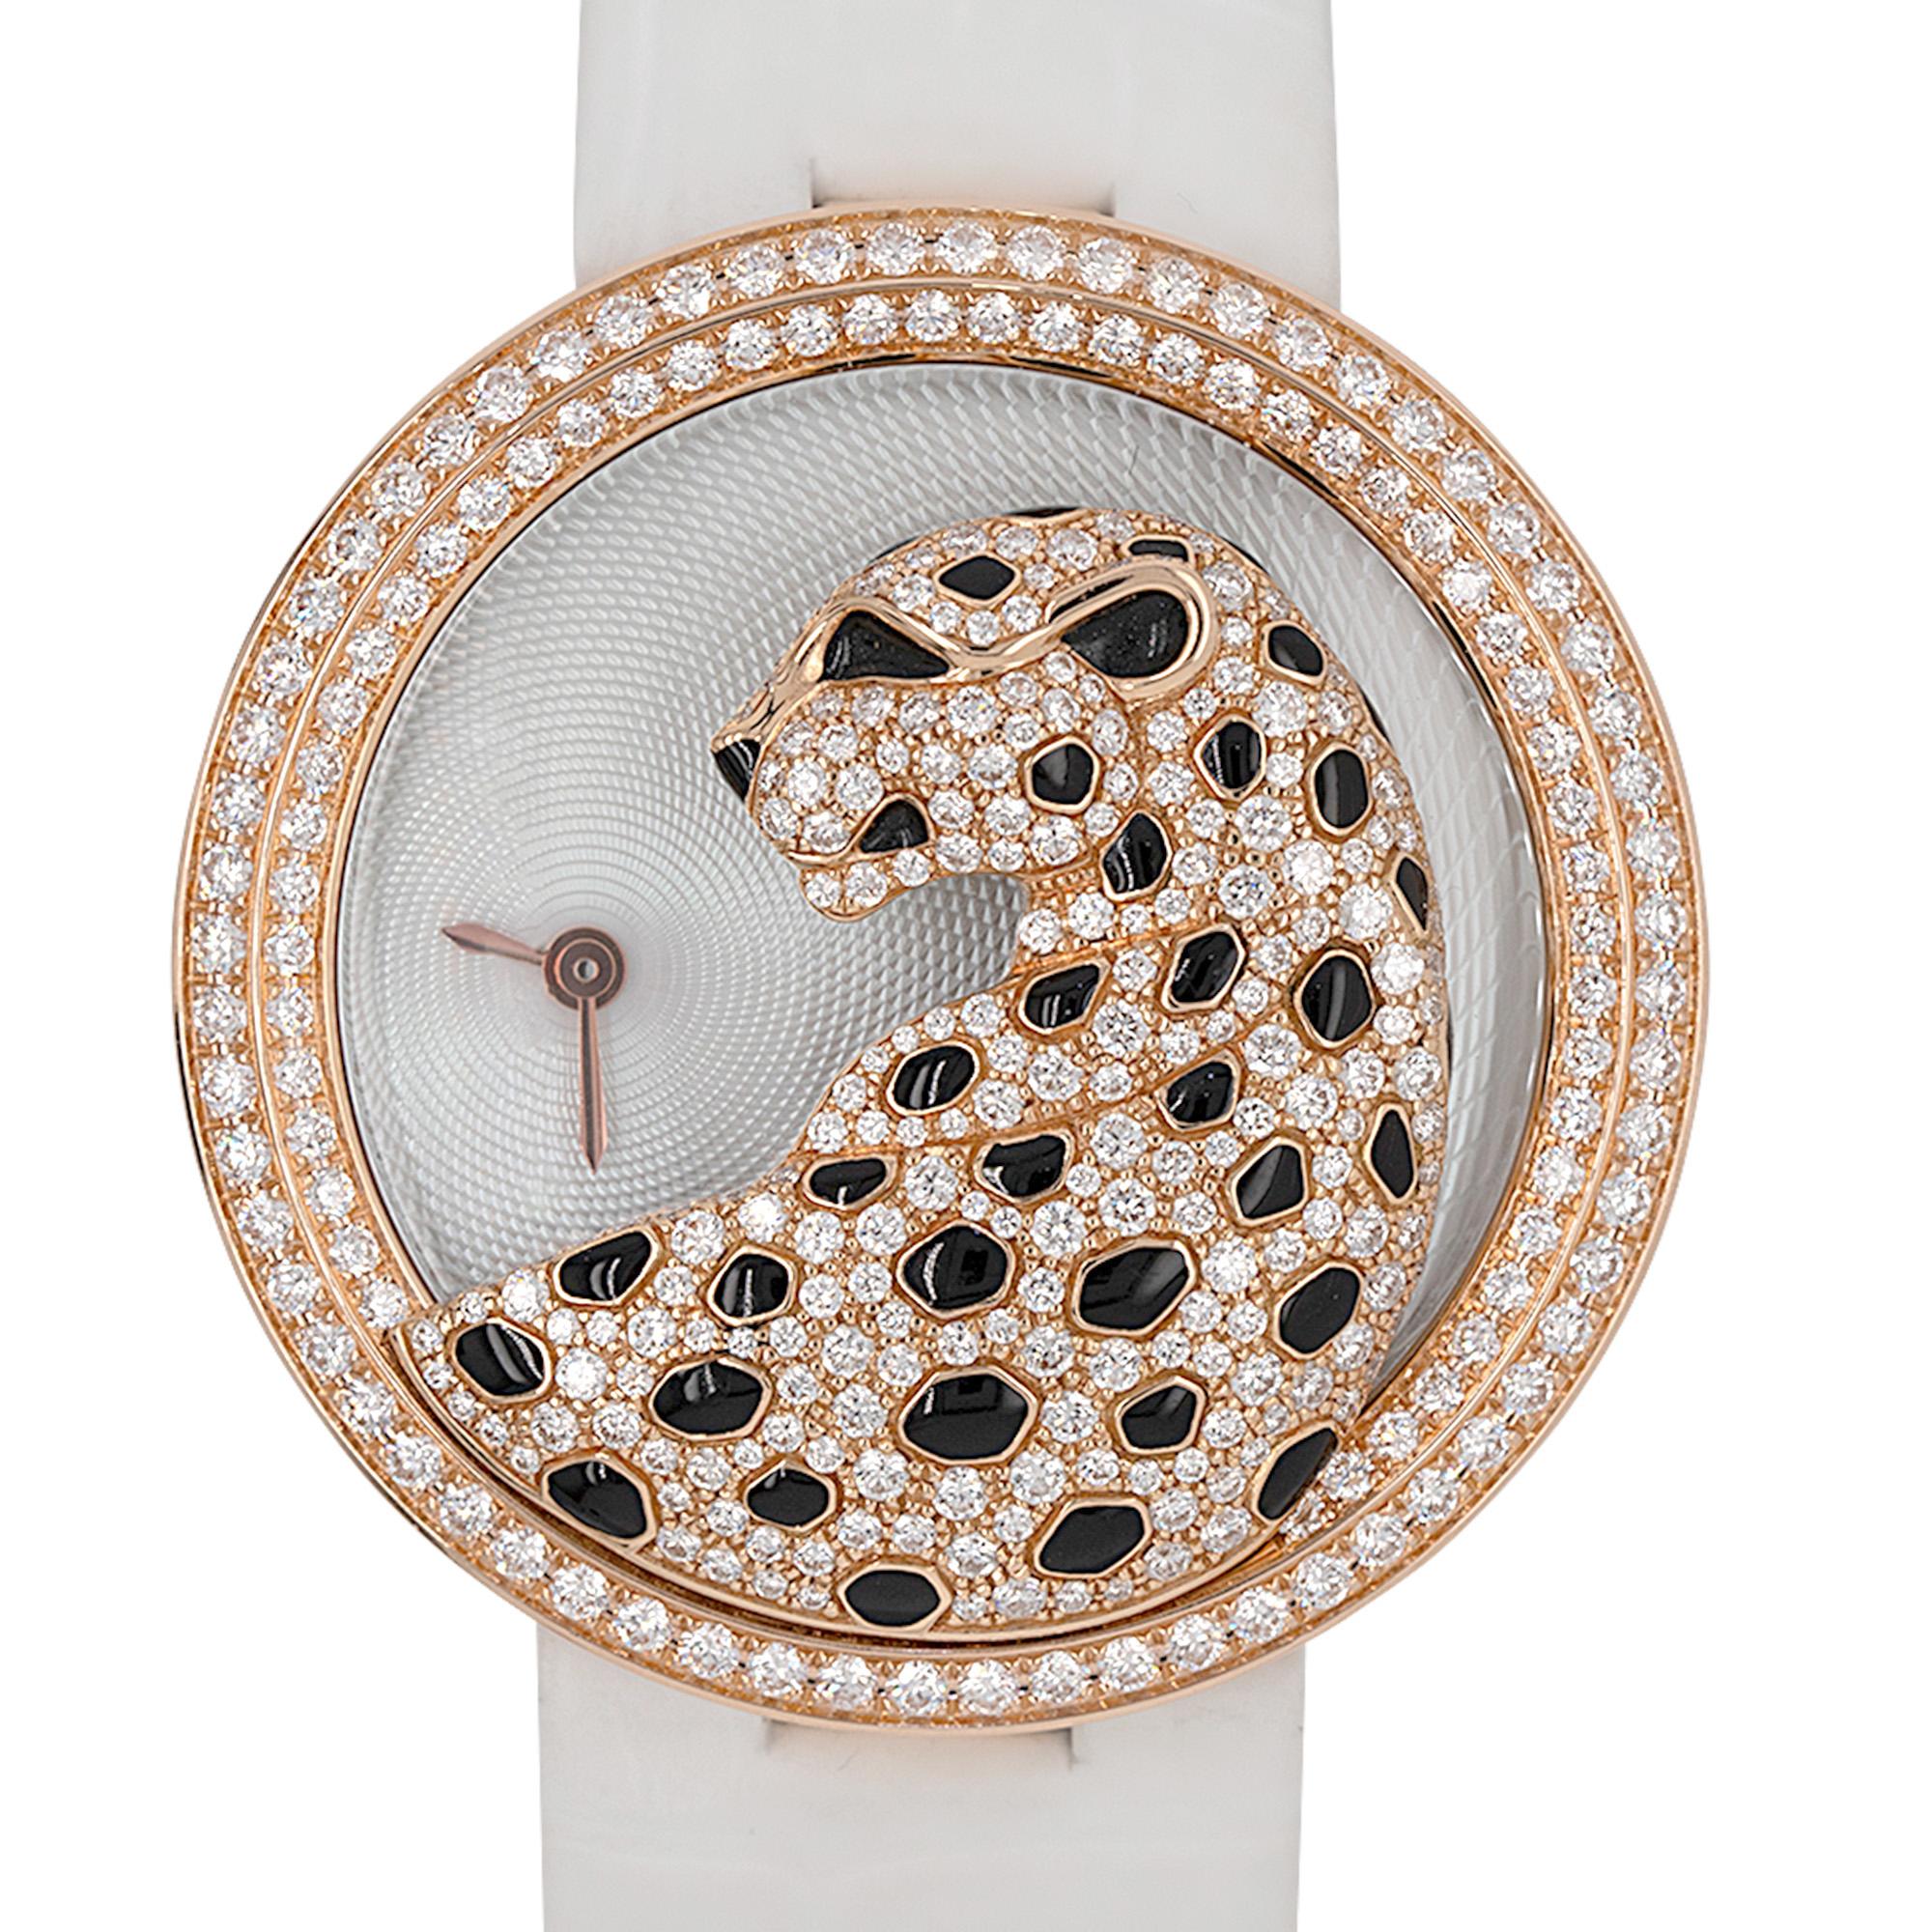 Cartier HPI00762 Panthere Divine Rose Gold Diamant Damenuhr

Erleben Sie die faszinierende Schönheit der Uhr Cartier Panthere Divine, ein wahres Zeugnis der Eleganz und Anmut. Dieser exquisite Zeitmesser ist mit Präzision gefertigt und verfügt über